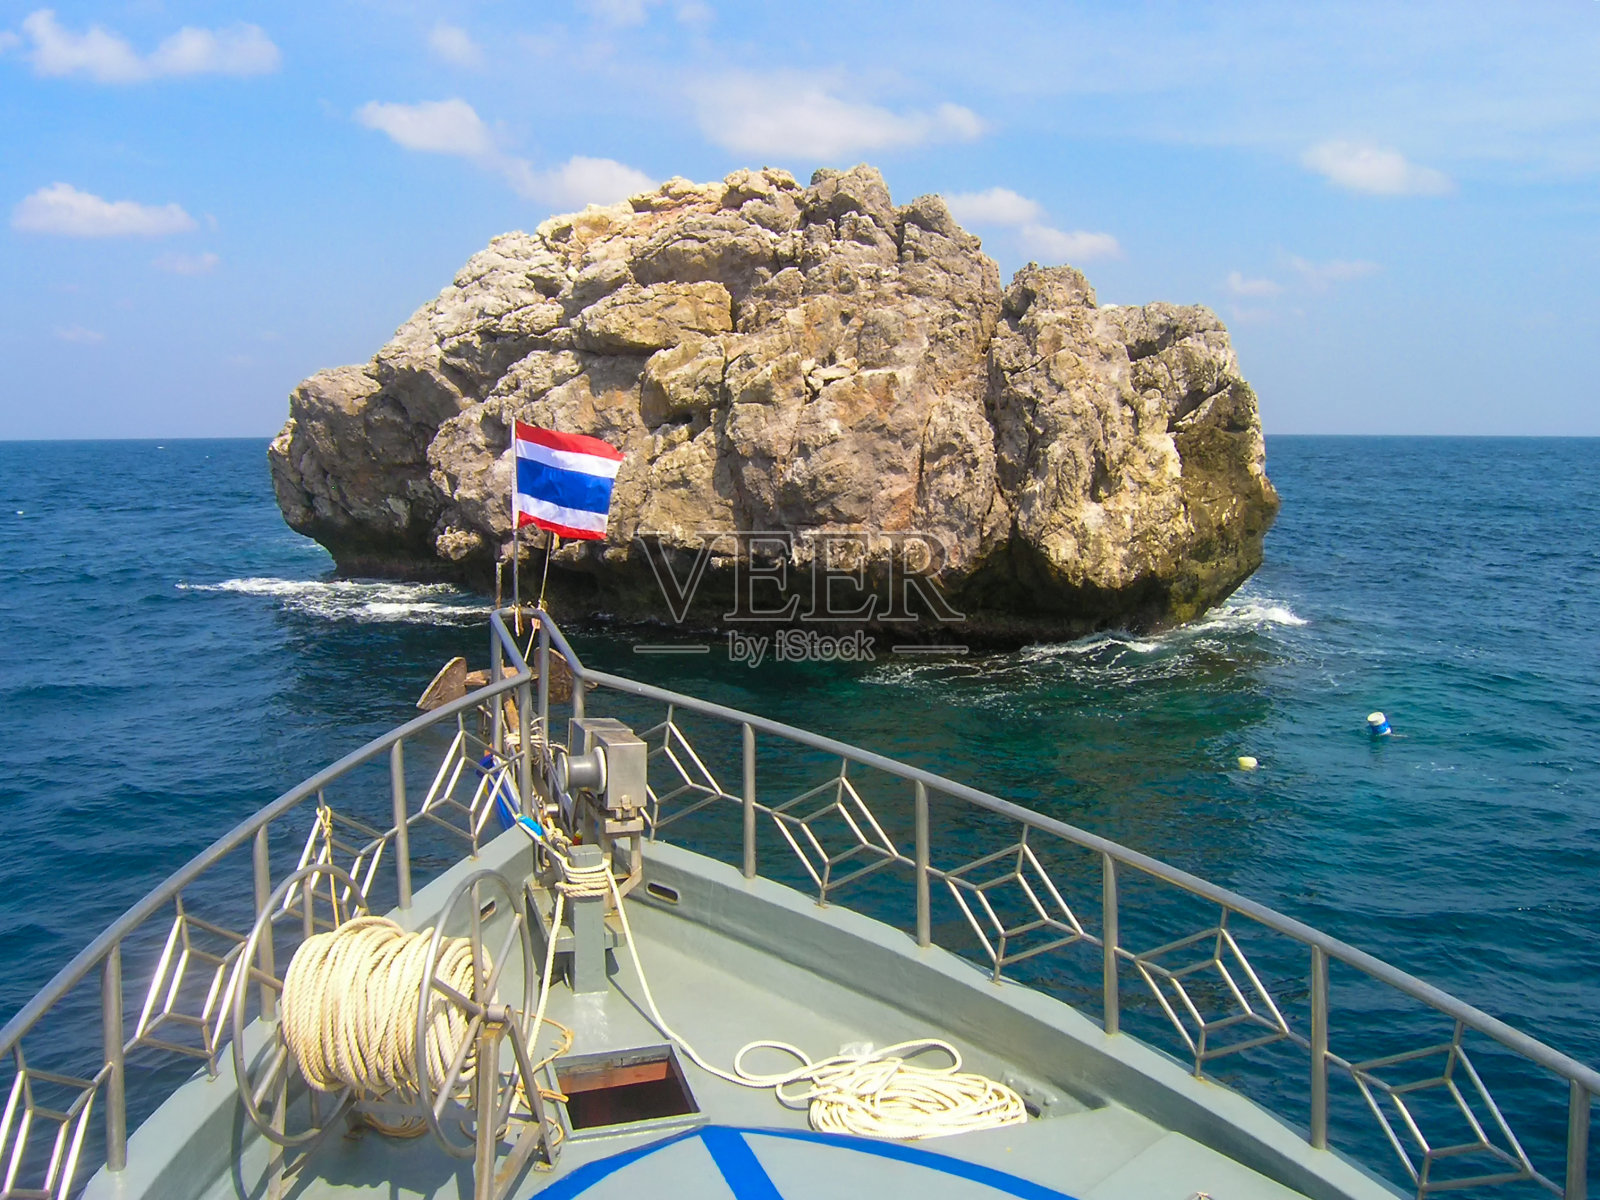 帆岩是泰国苏梅岛附近最受欢迎的潜水地点之一照片摄影图片